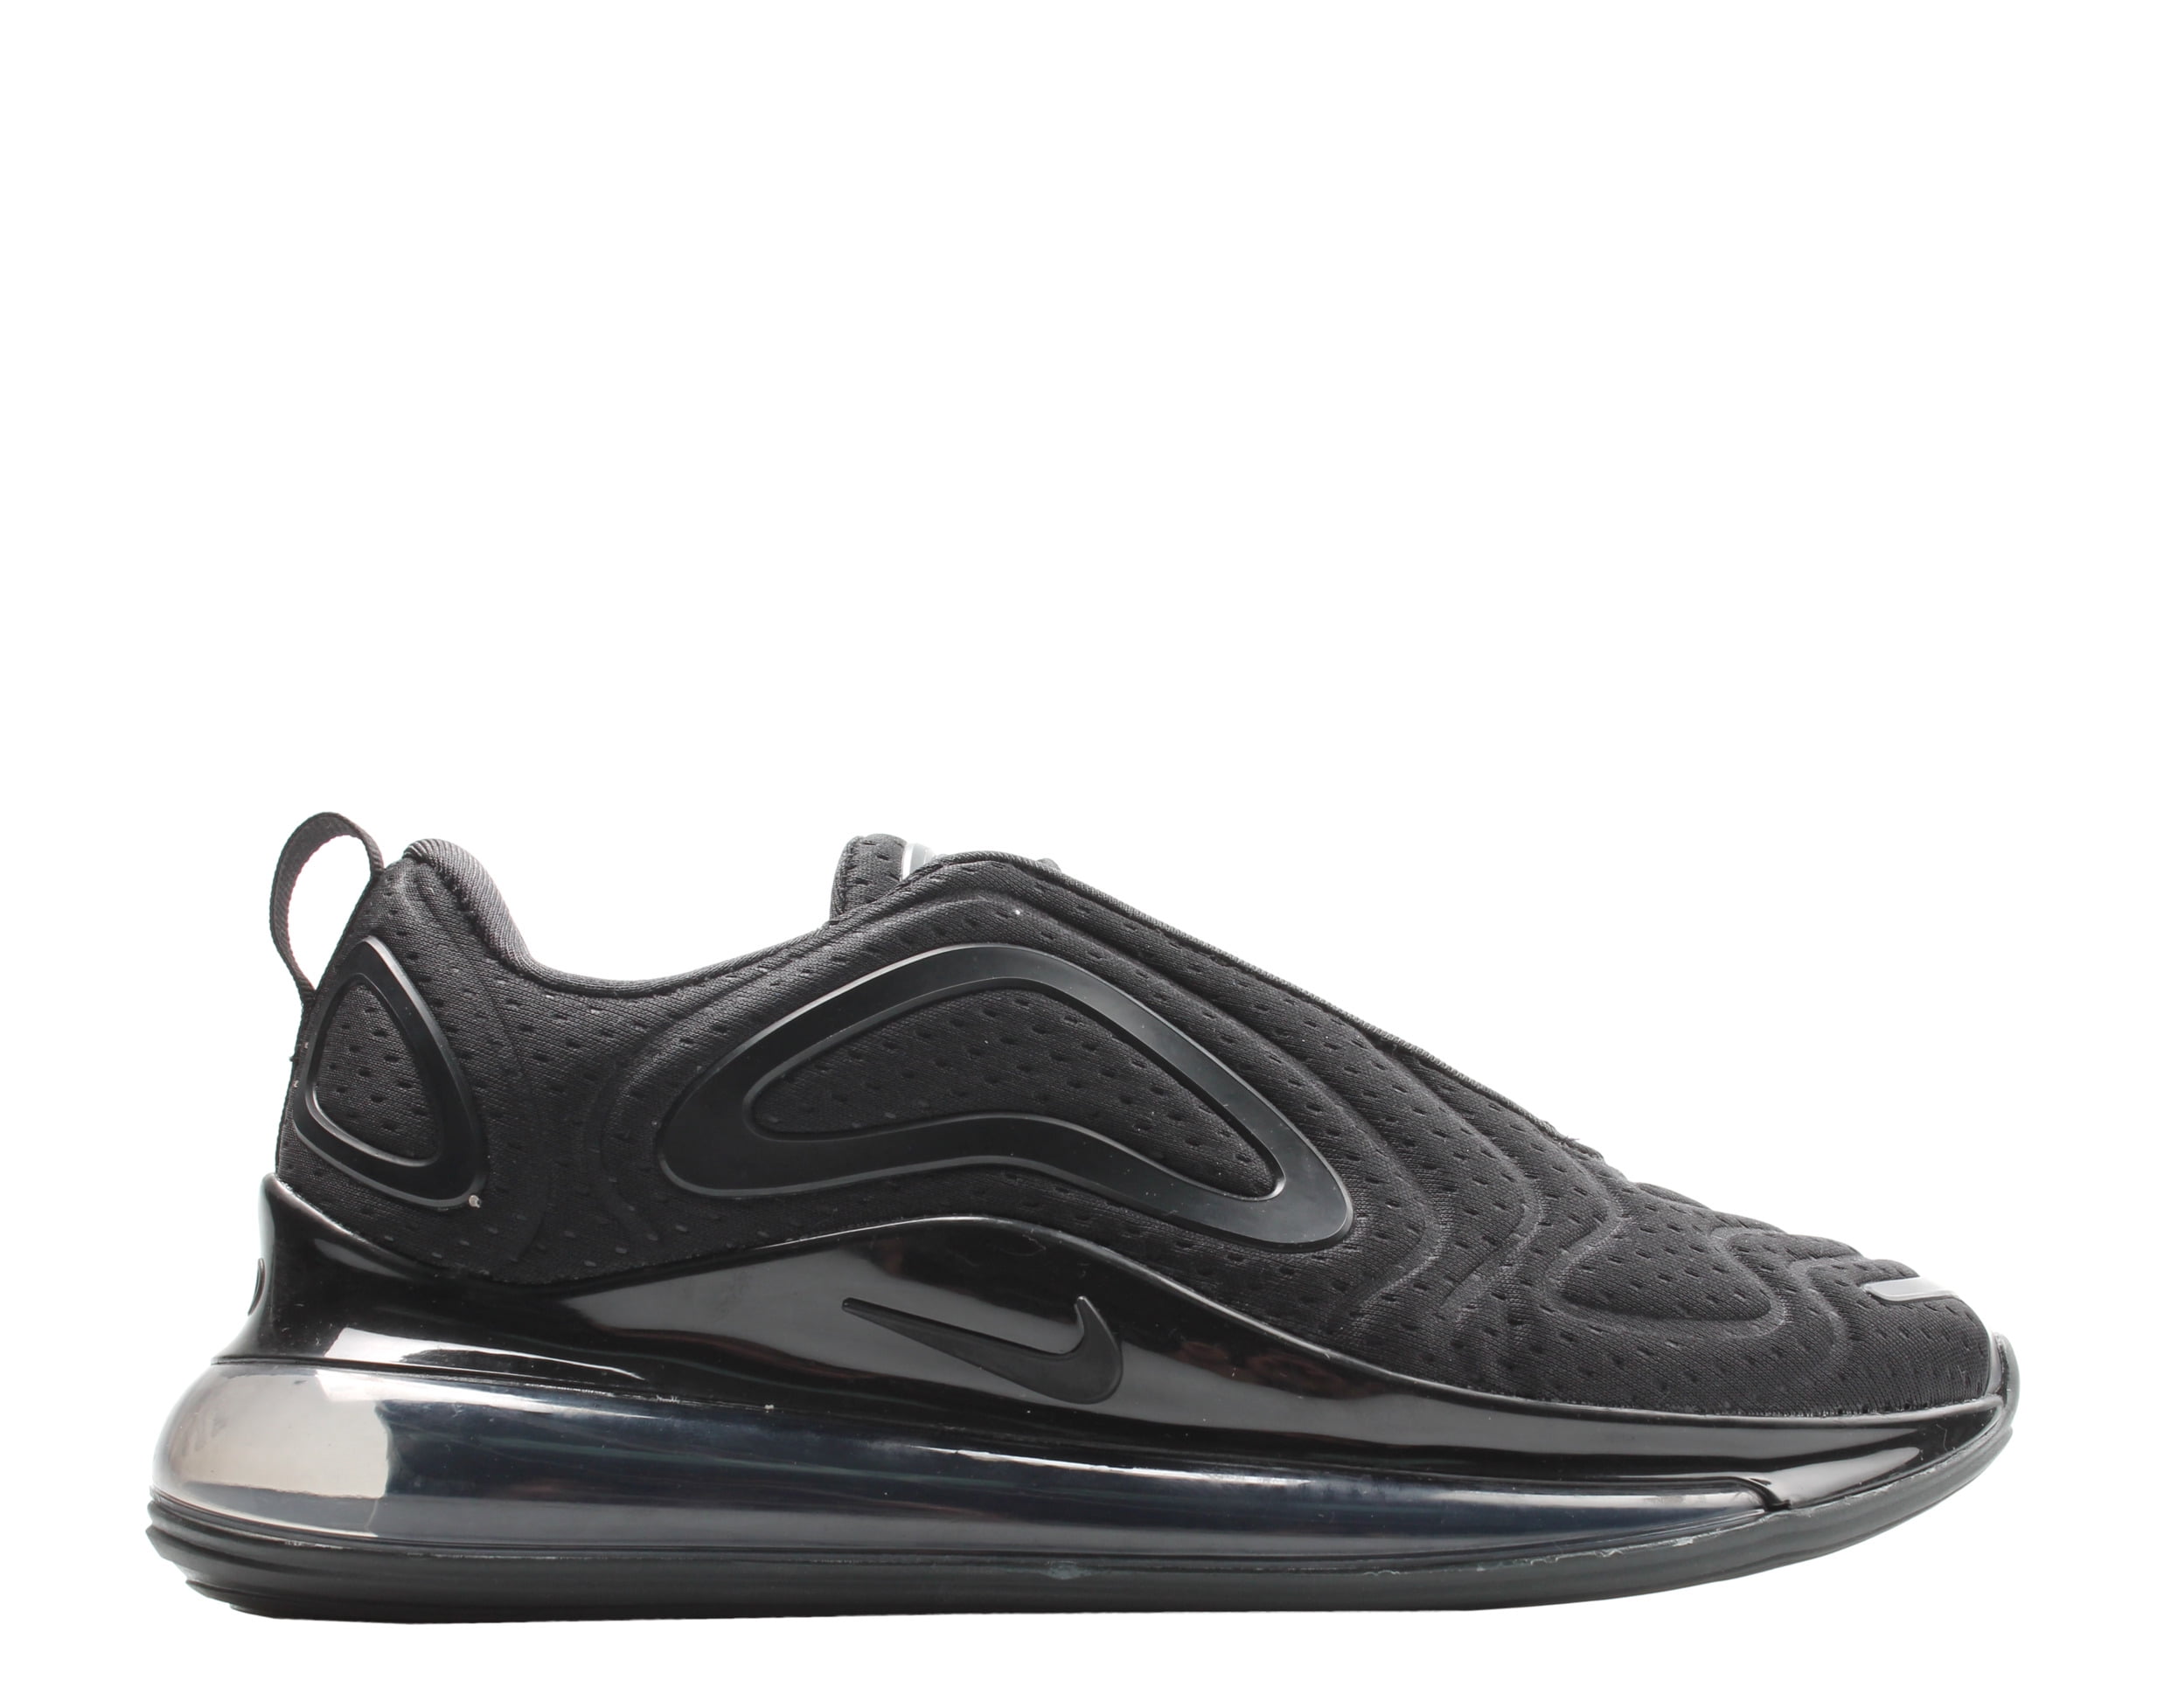 Nike 720 Men's Running Shoes Size 12.5 - Walmart.com